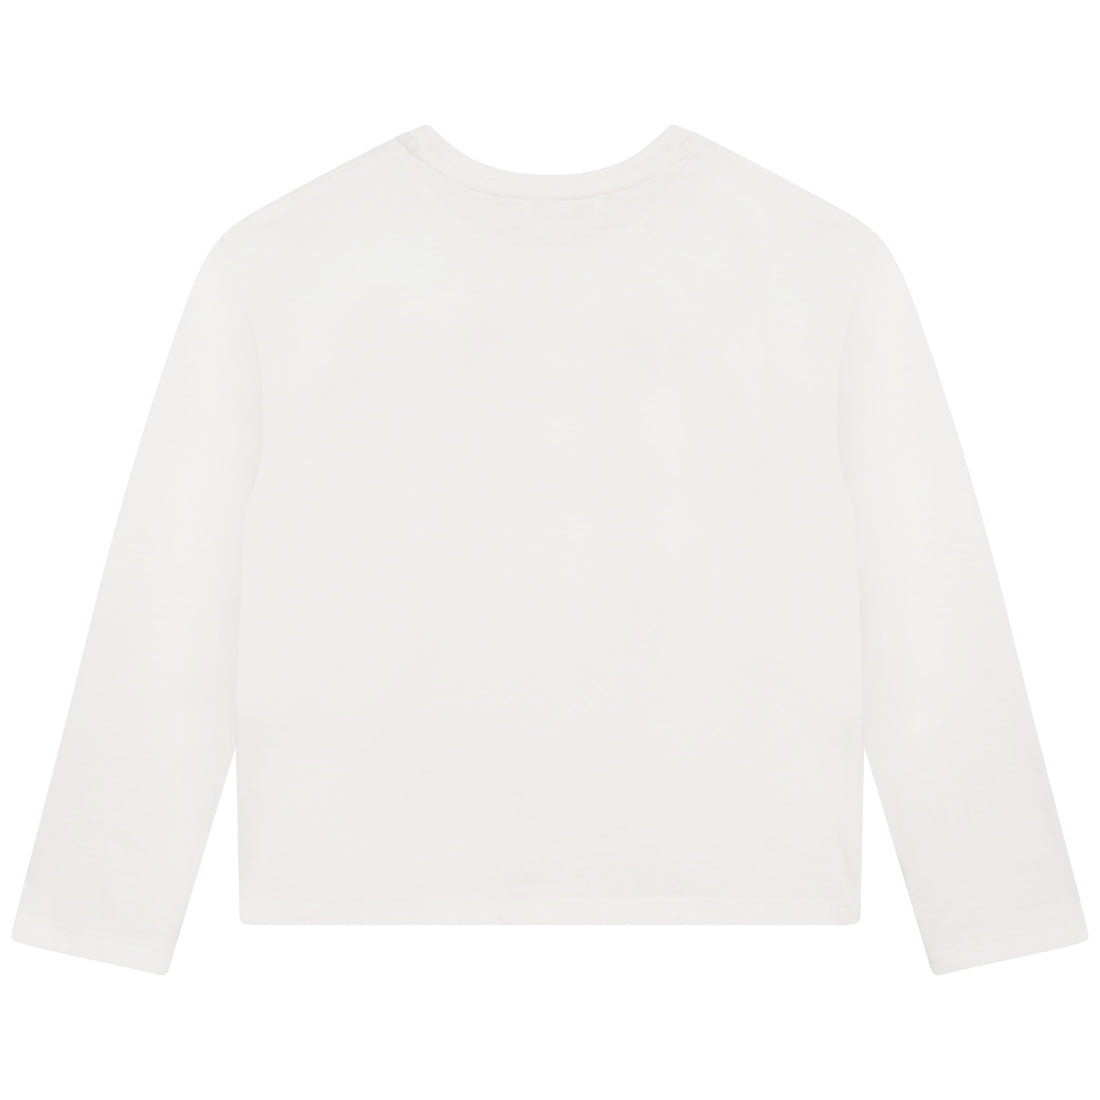 Chloe Long Sleeve T-Shirt Style: C15E34